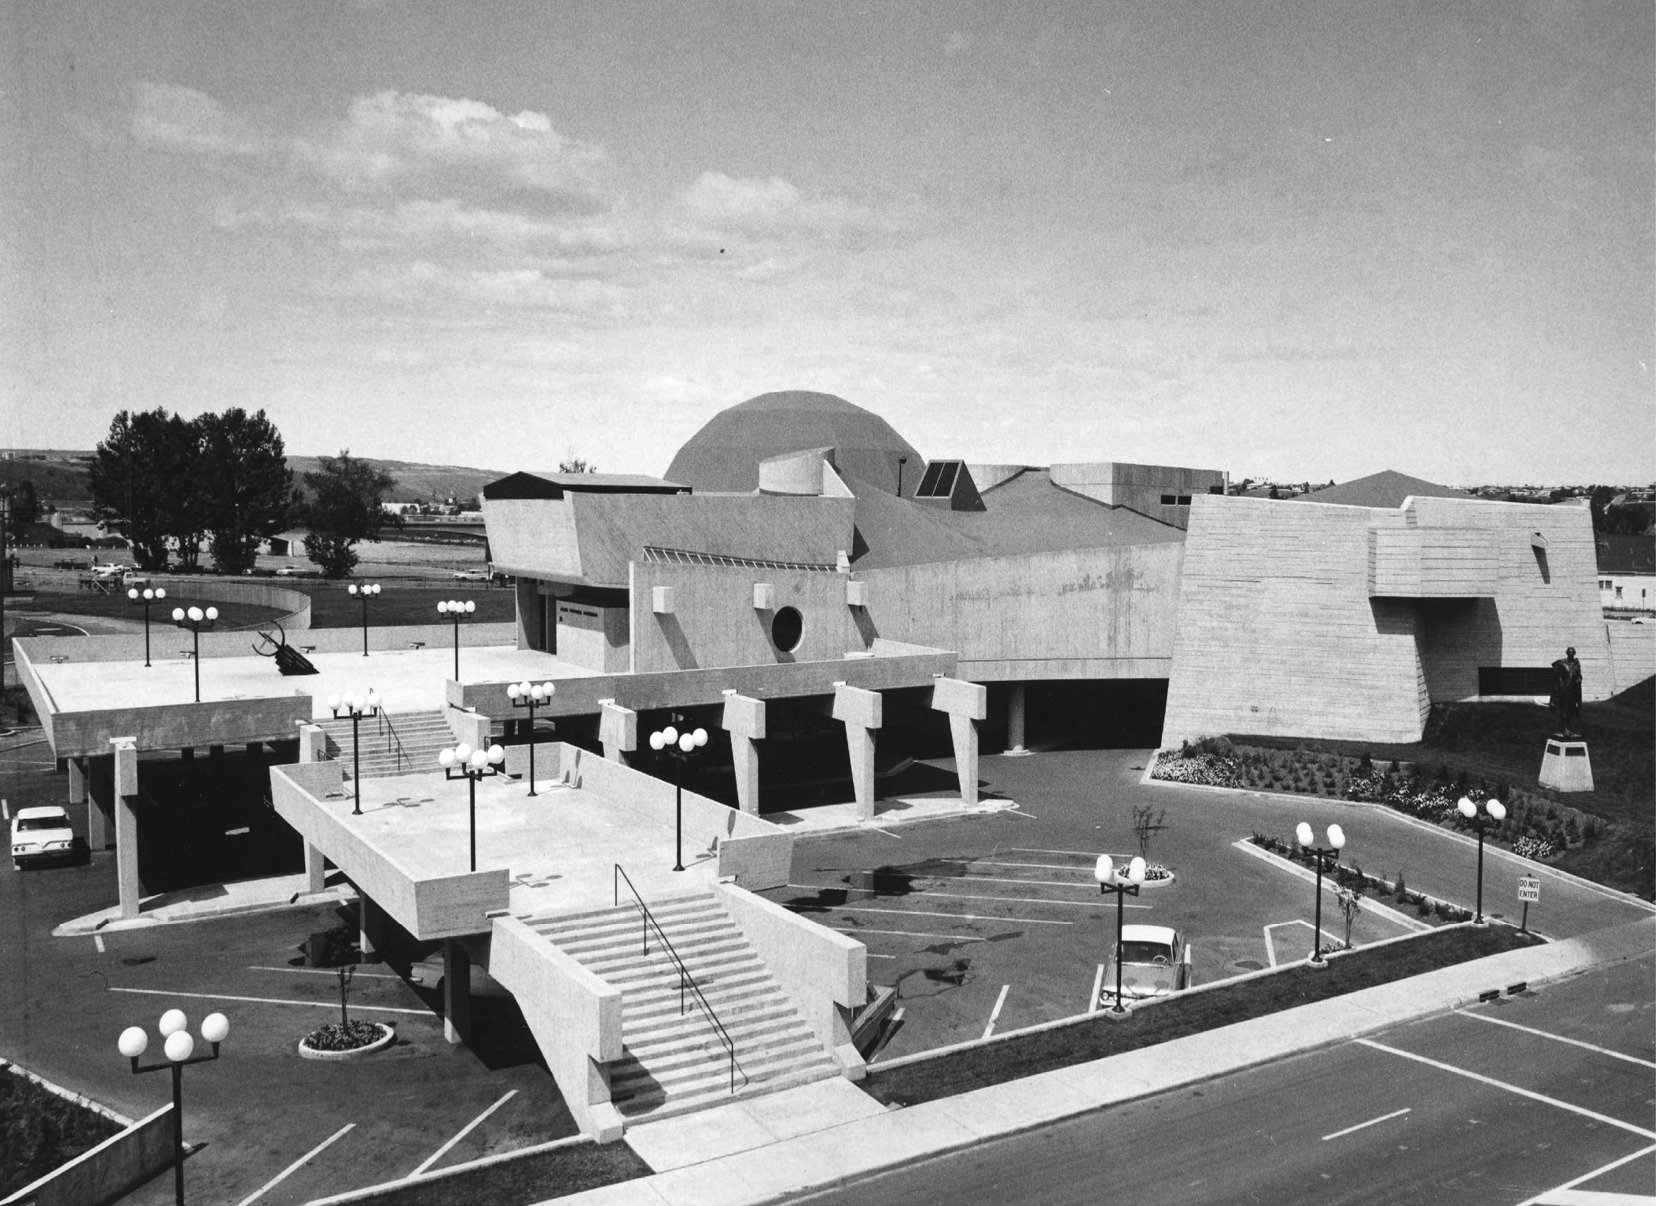 Centennial Planetarium - Brutalist architecture